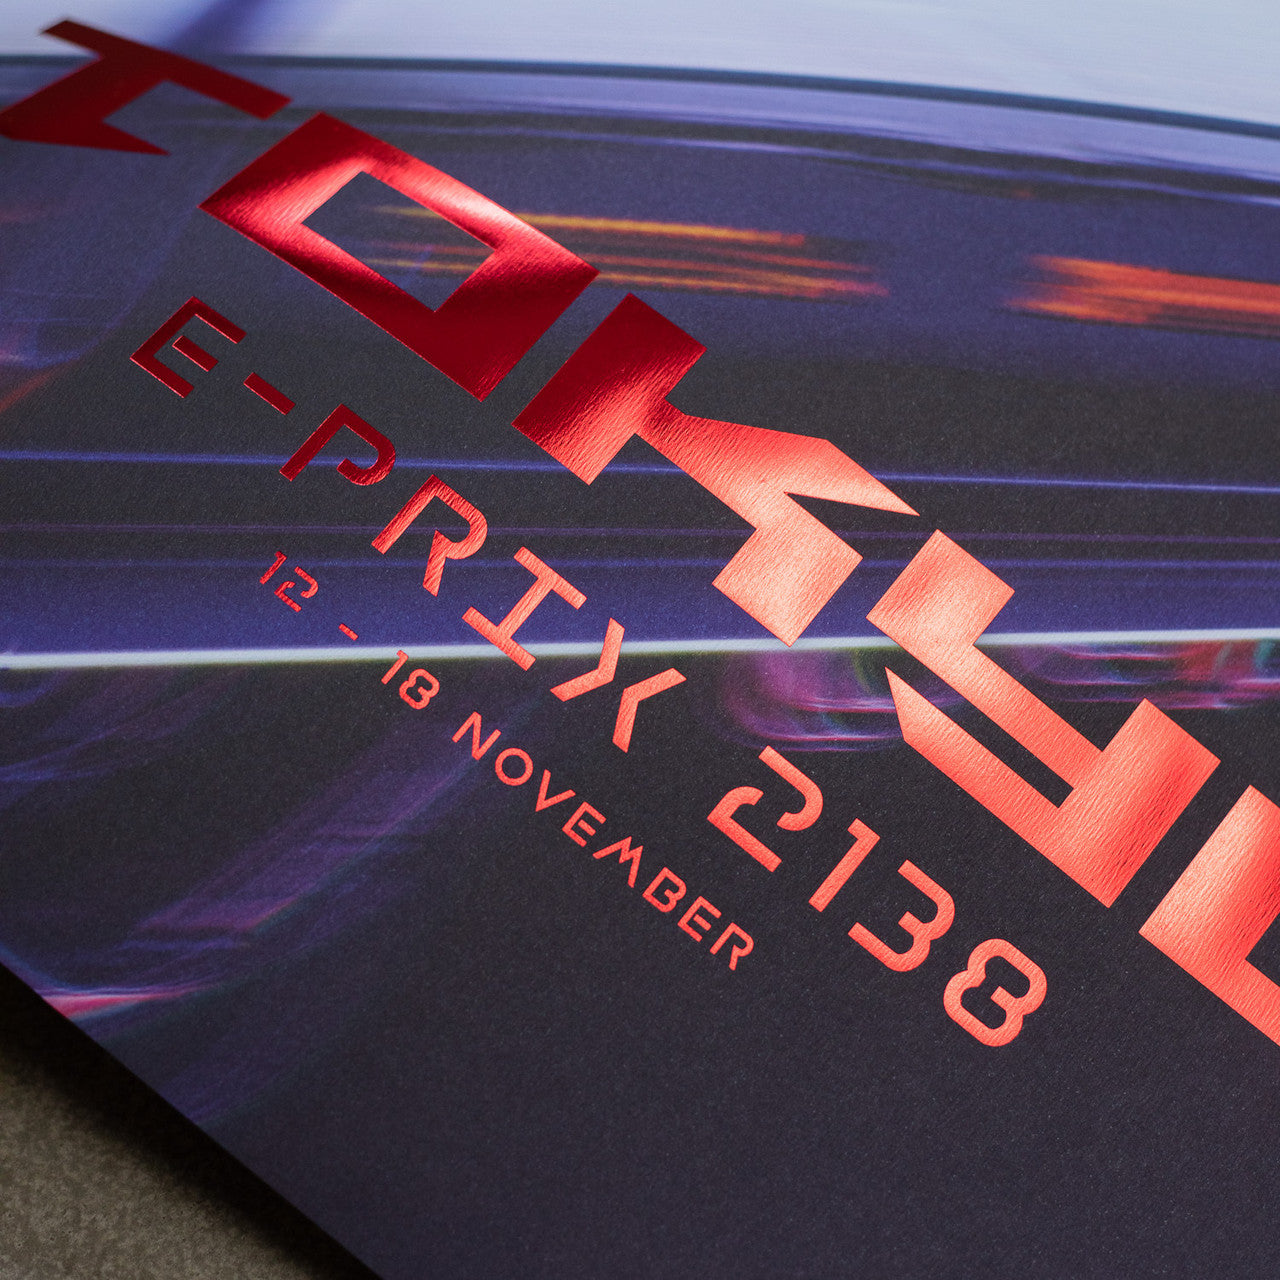 Porsche 99X Electric - Future - Tokyo - 2138 | Collector’s Edition